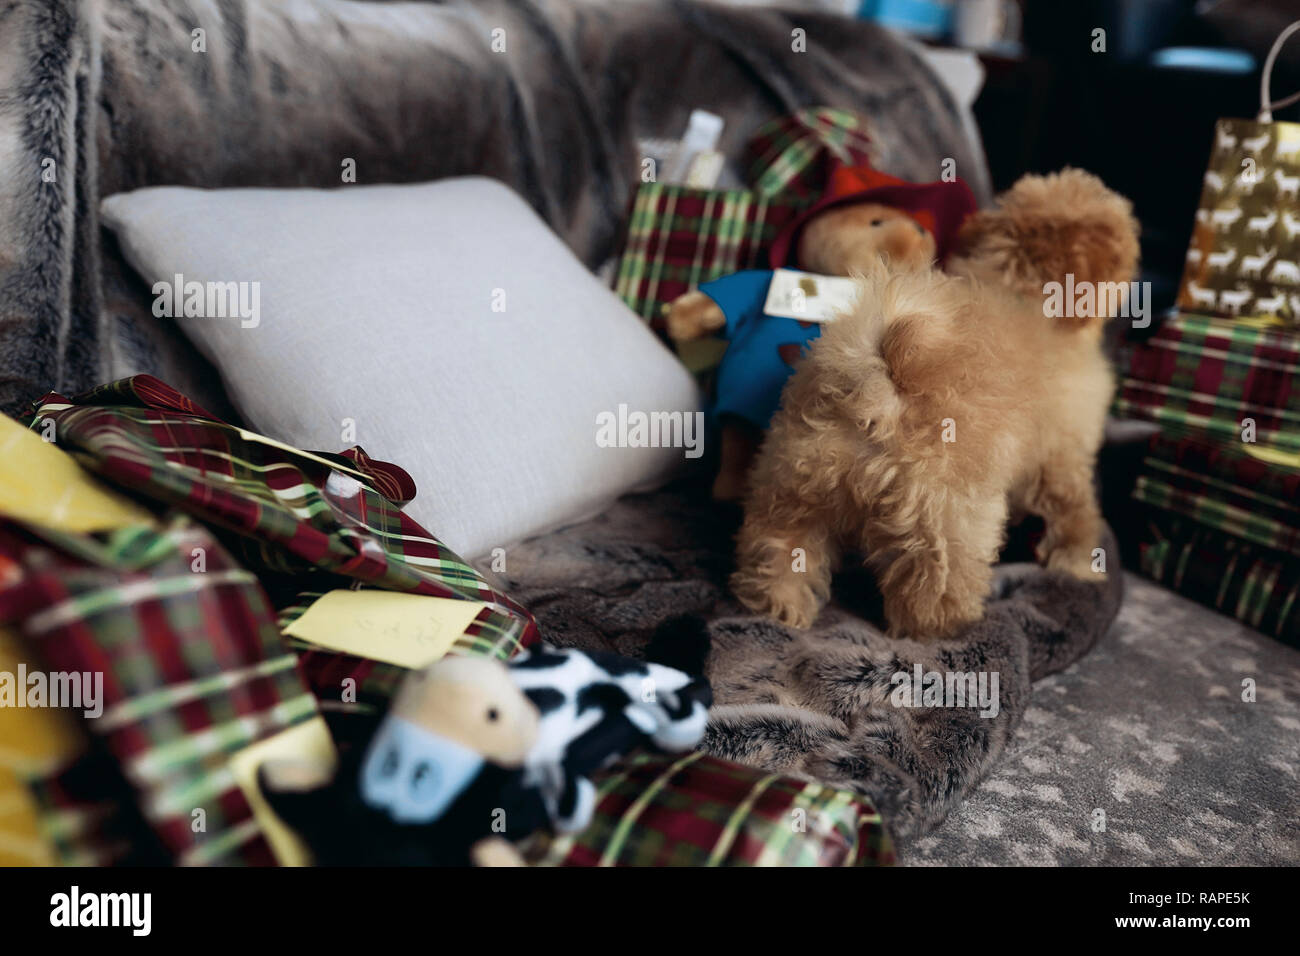 Piccolo dolce cucciolo rosso con pelliccia ricci in piedi su un lettino, molti regali per le feste di natale in giro. Magica atmosfera del nuovo anno Foto Stock